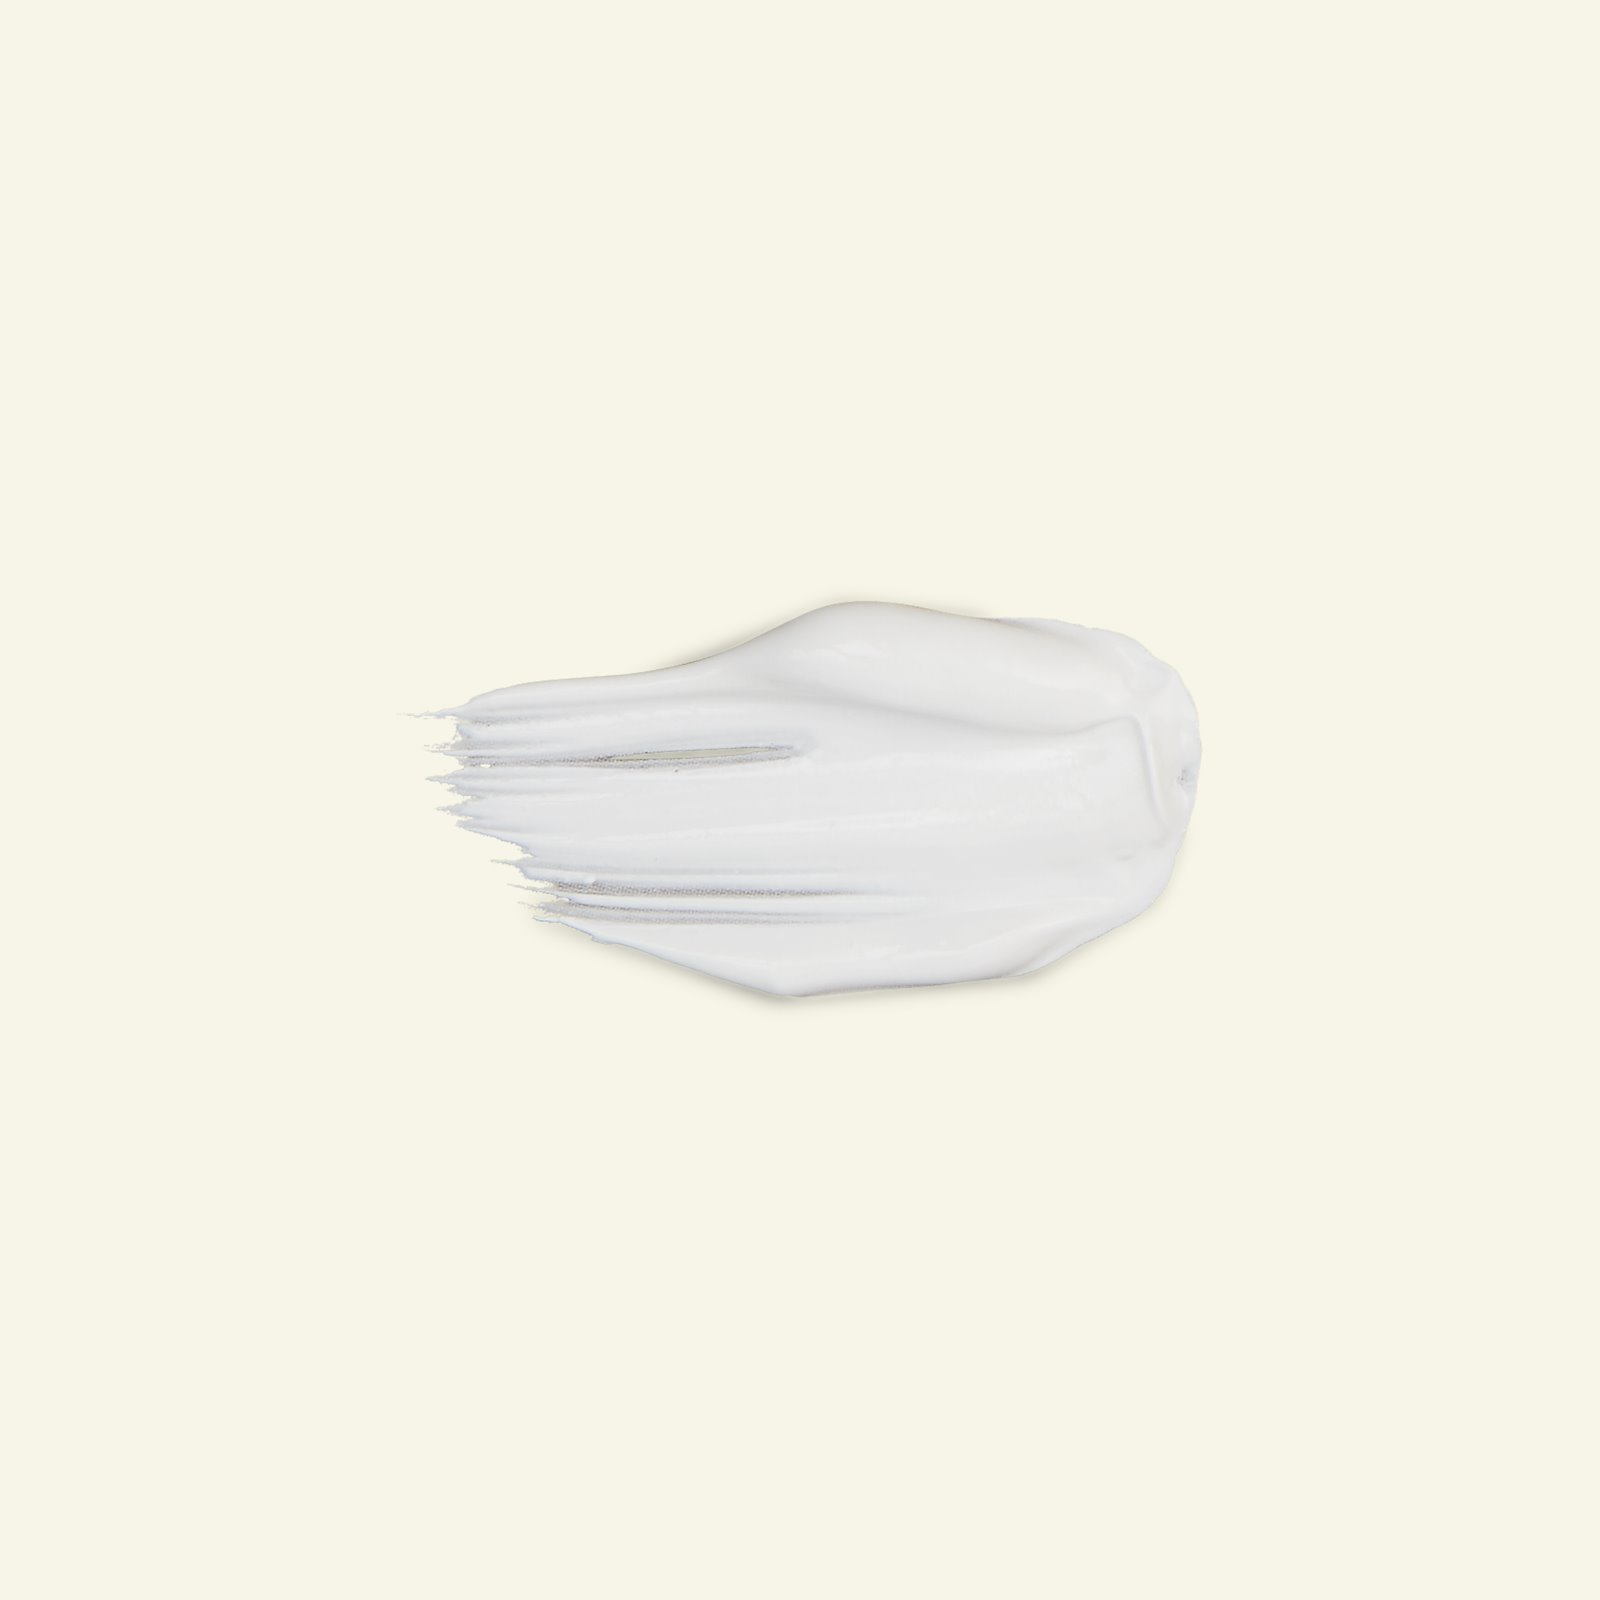 Javana textilfärg, täckande, vit, 50ml 29570_pack